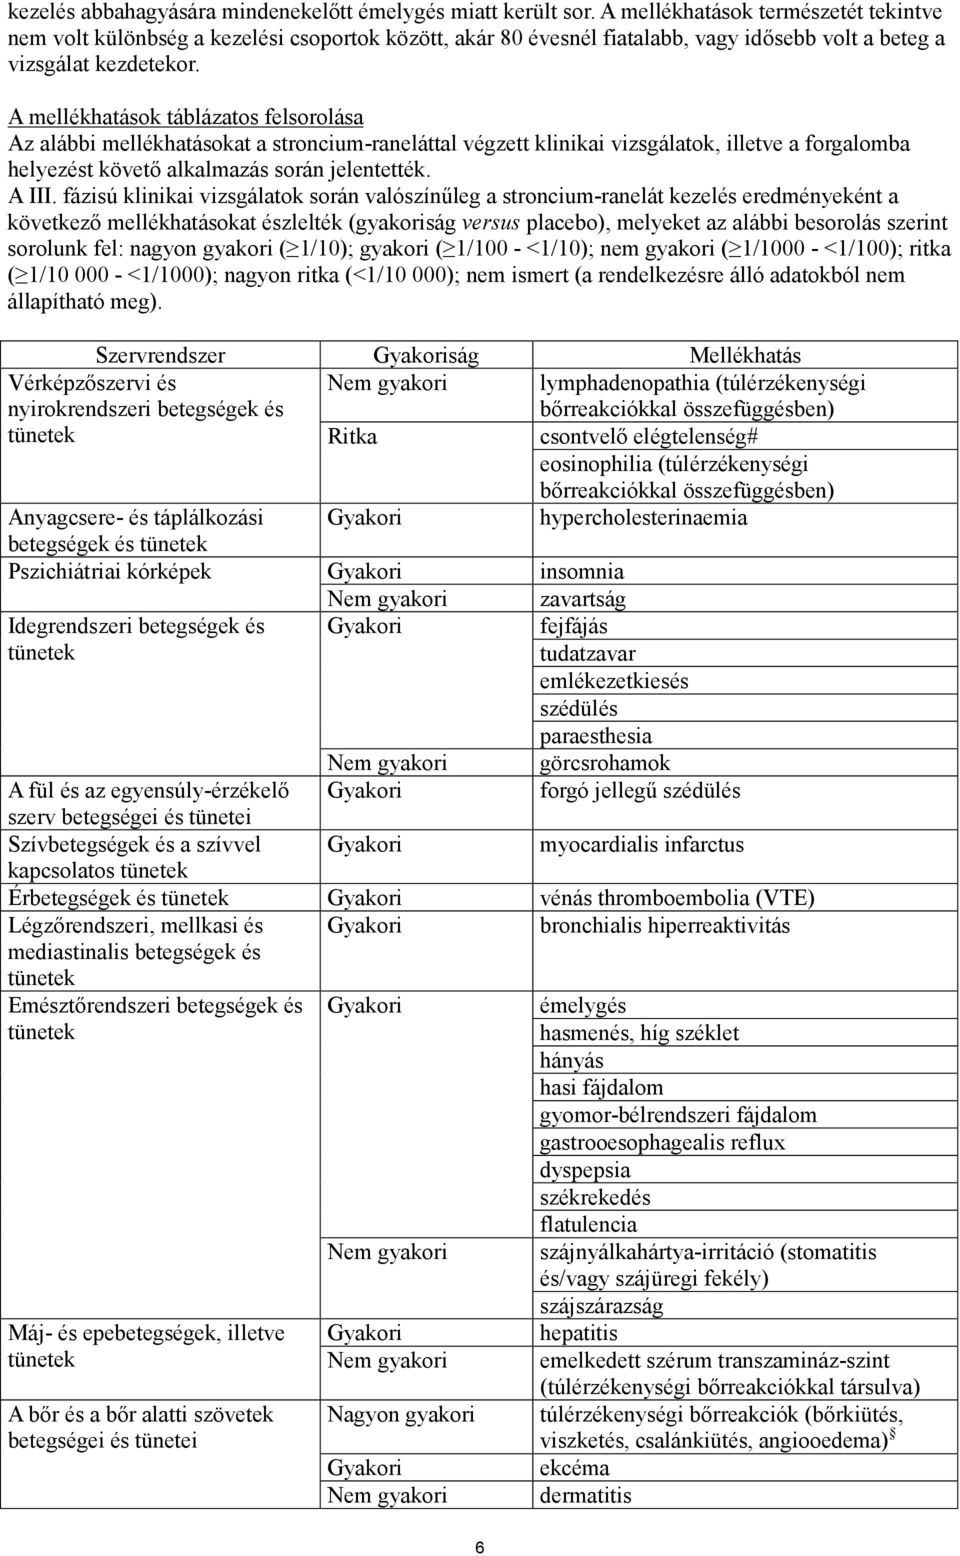 A mellékhatások táblázatos felsorolása Az alábbi mellékhatásokat a stroncium-raneláttal végzett klinikai vizsgálatok, illetve a forgalomba helyezést követő alkalmazás során jelentették. A III.